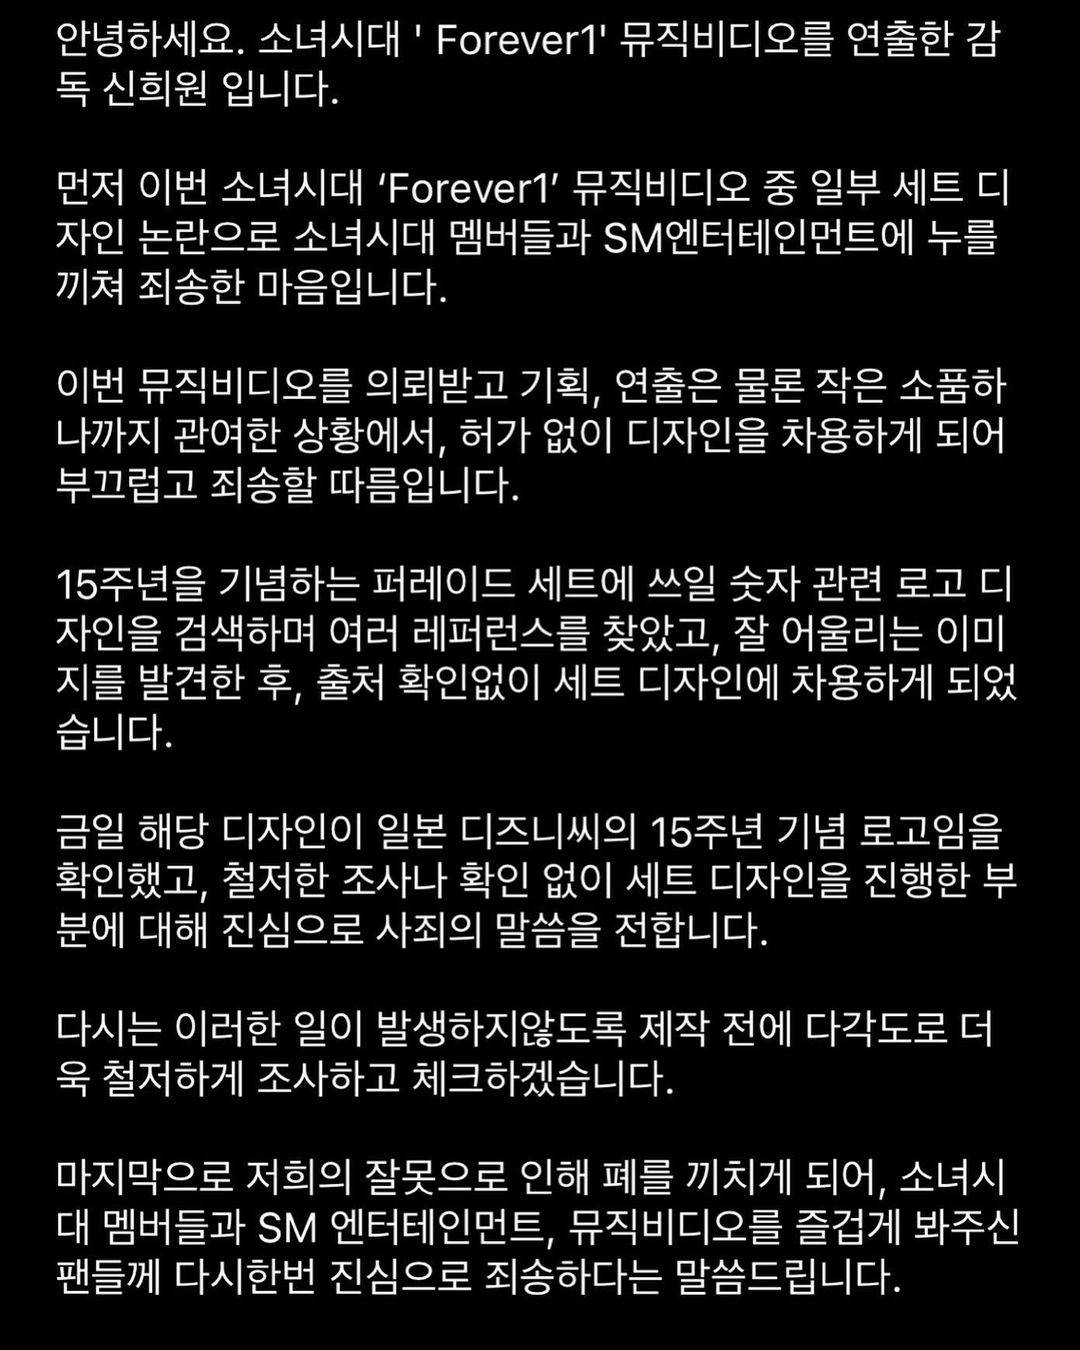 MV導演在官方IG上發文道歉